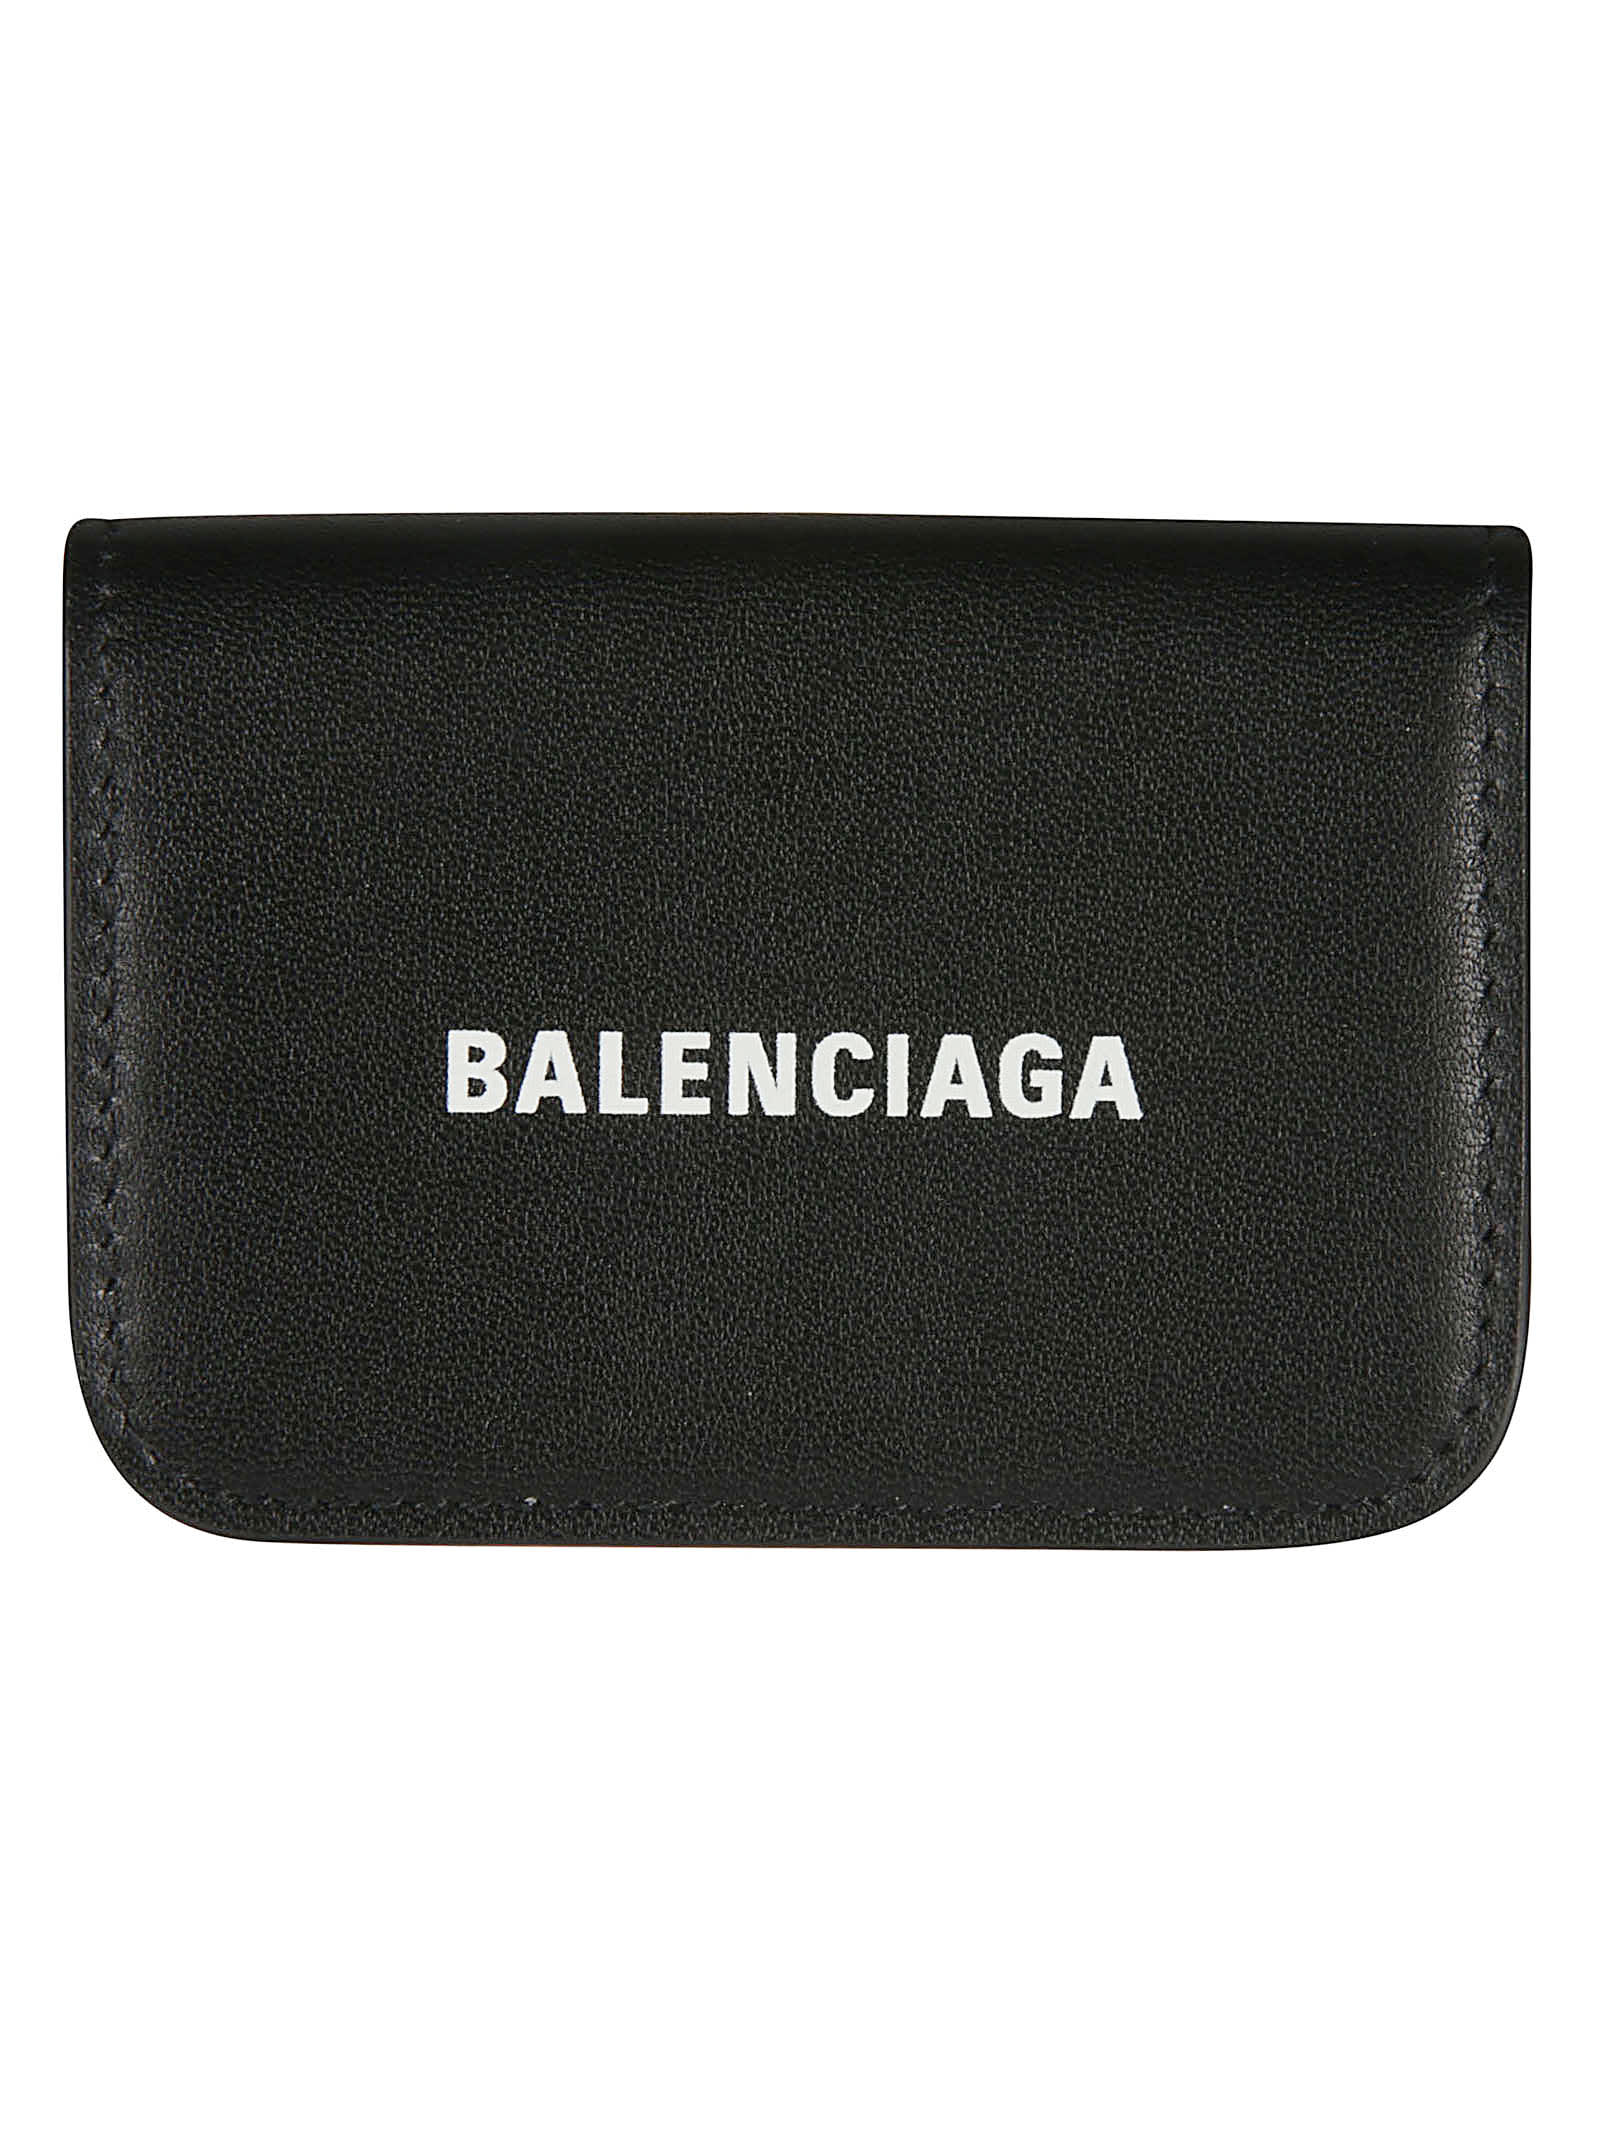 Balenciaga Logo Print Coin Purse In Nero